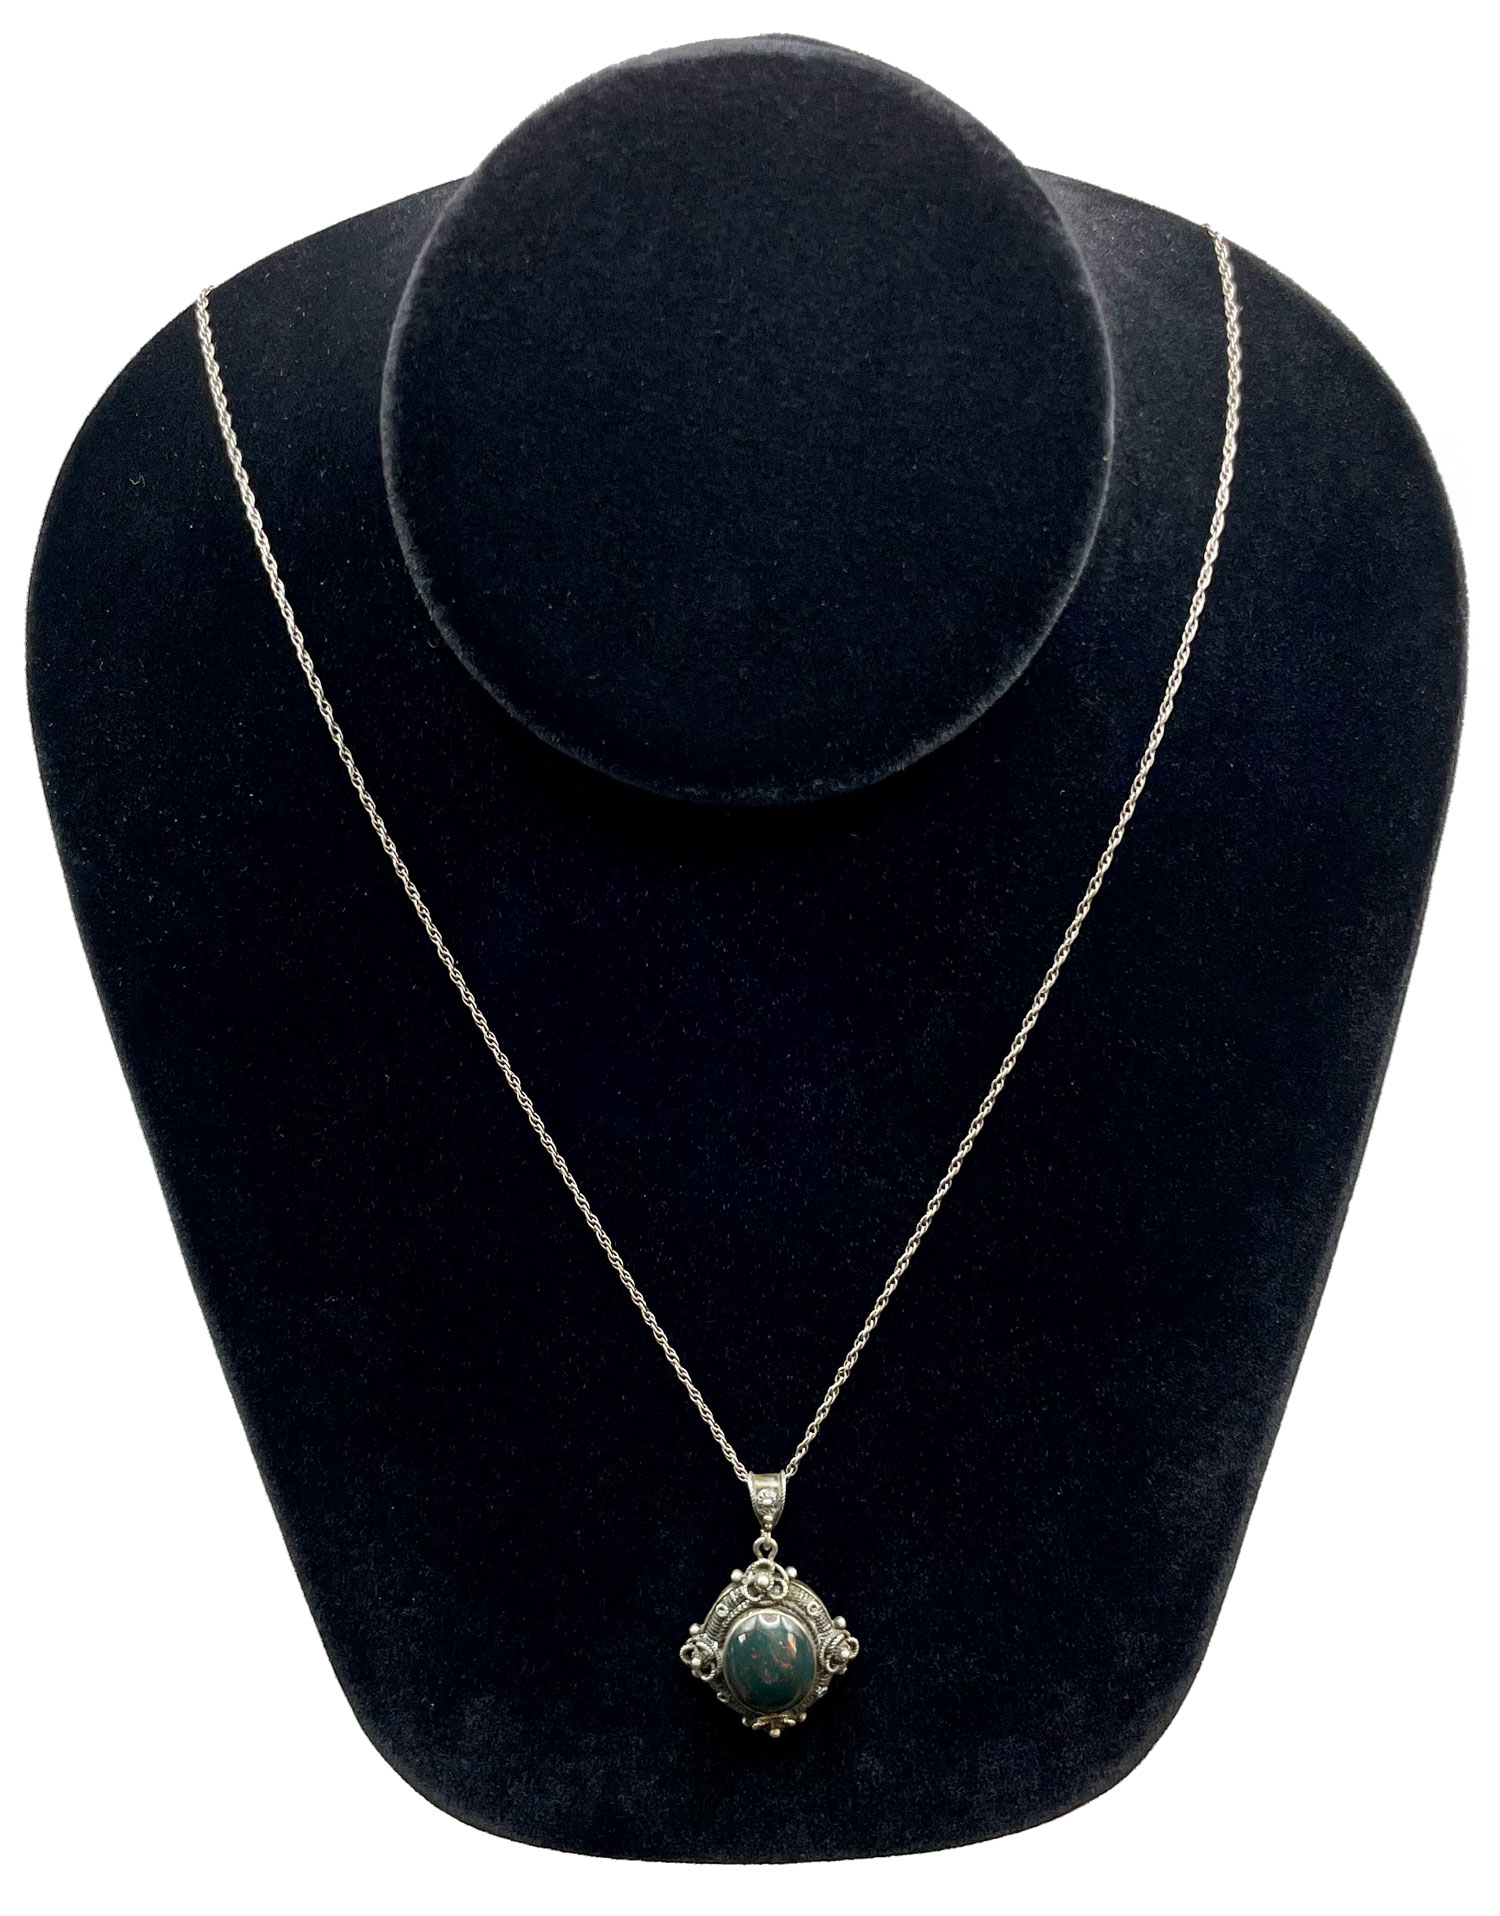 Vintage bloodstone pendant necklace